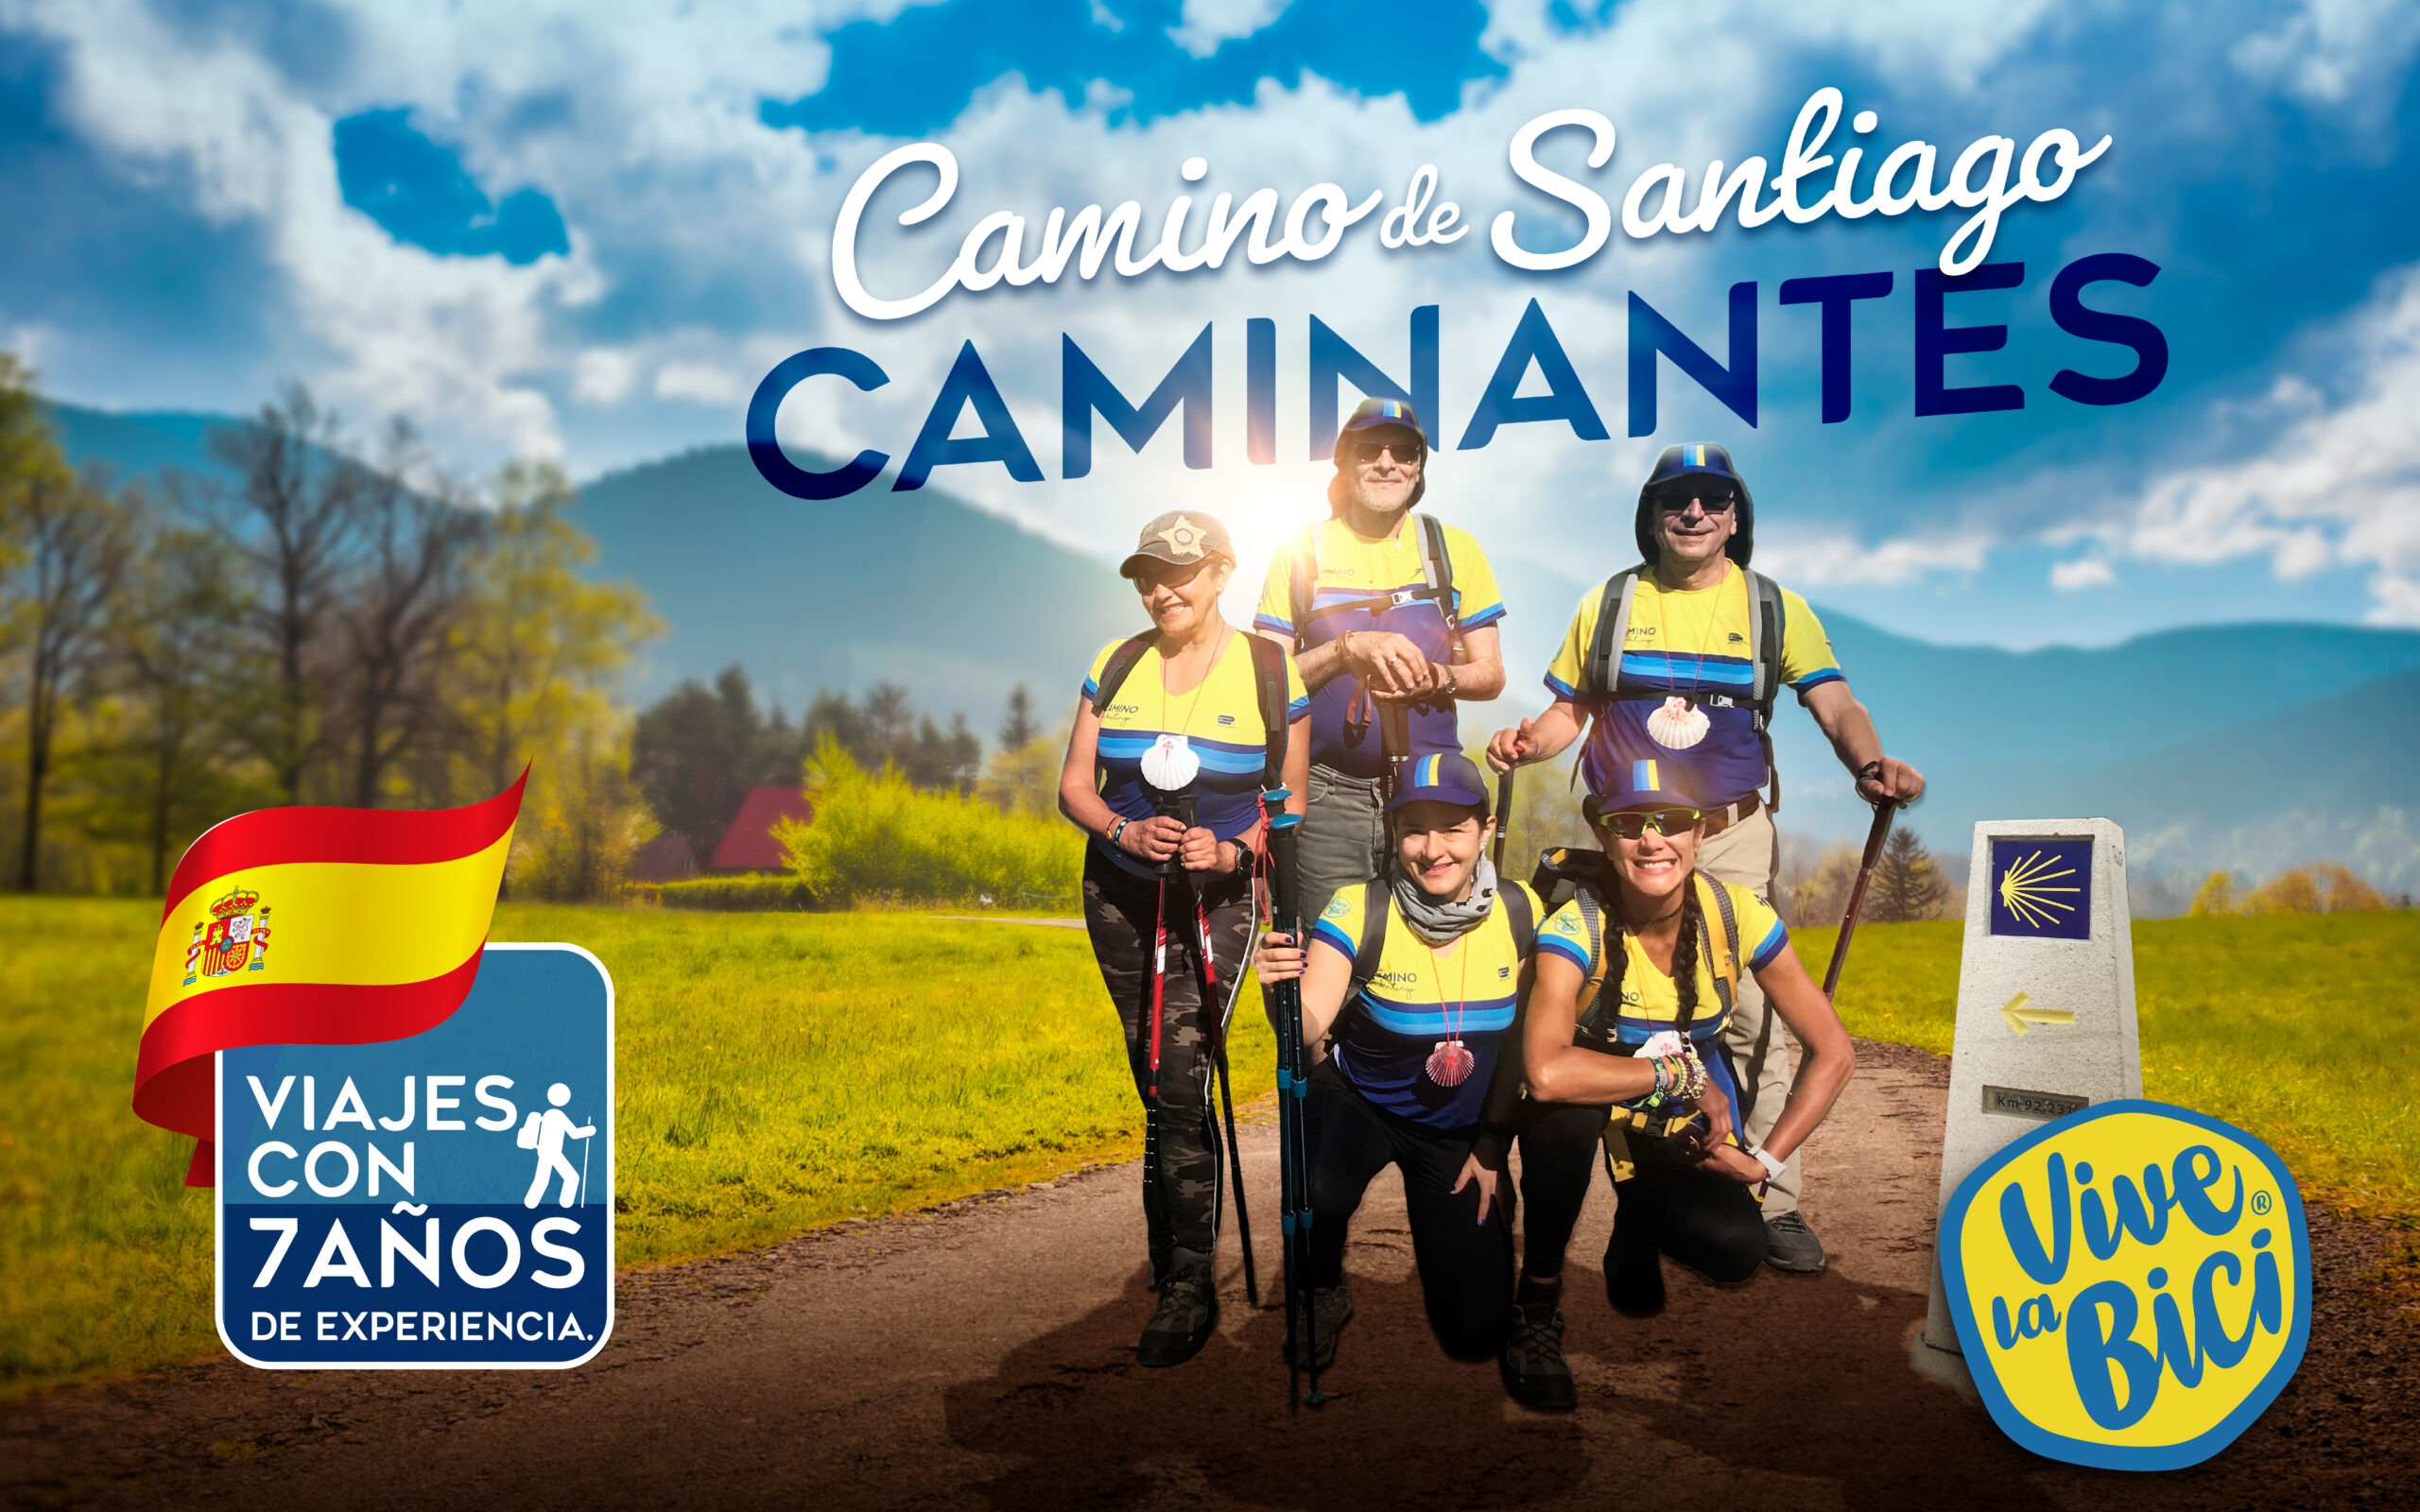 Publicación promocional de caminantes Vive la Bici en Camino de Santiago